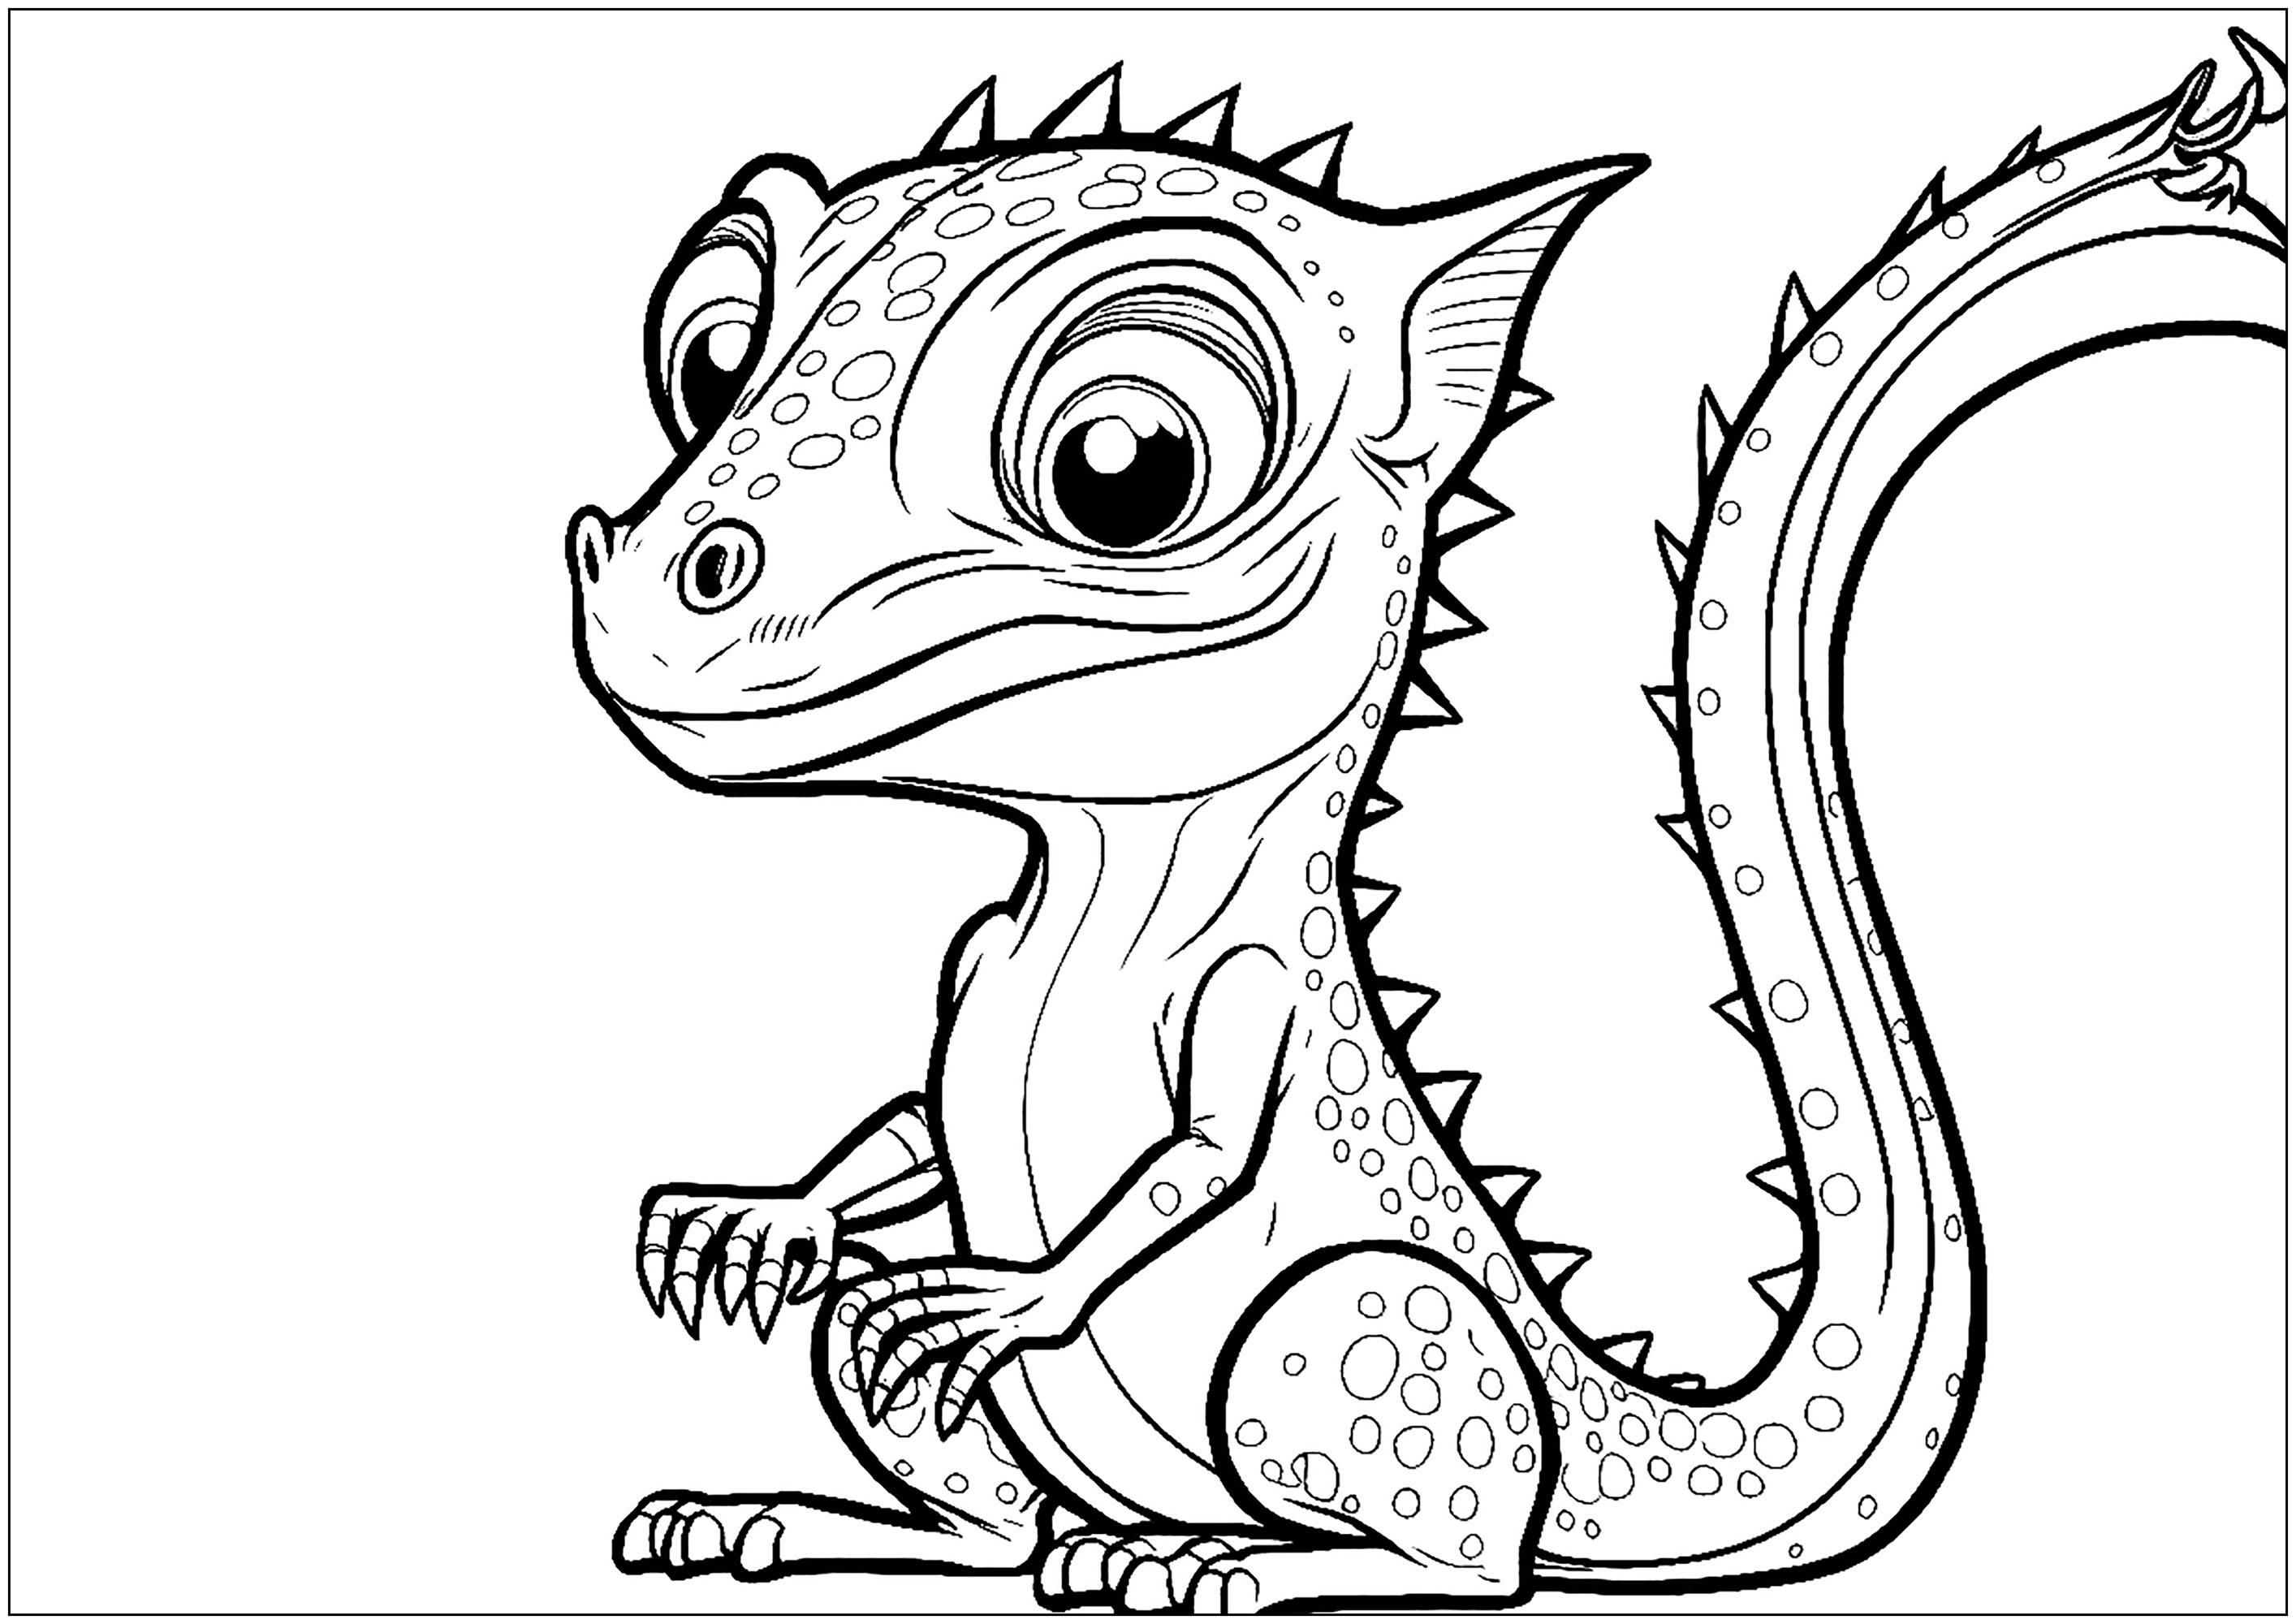 Dibujos para colorear gratis de Camaleones y lagartijas para imprimir y  colorear - Camaleones y lagartijas - Just Color Niños : Dibujos para  colorear para niños